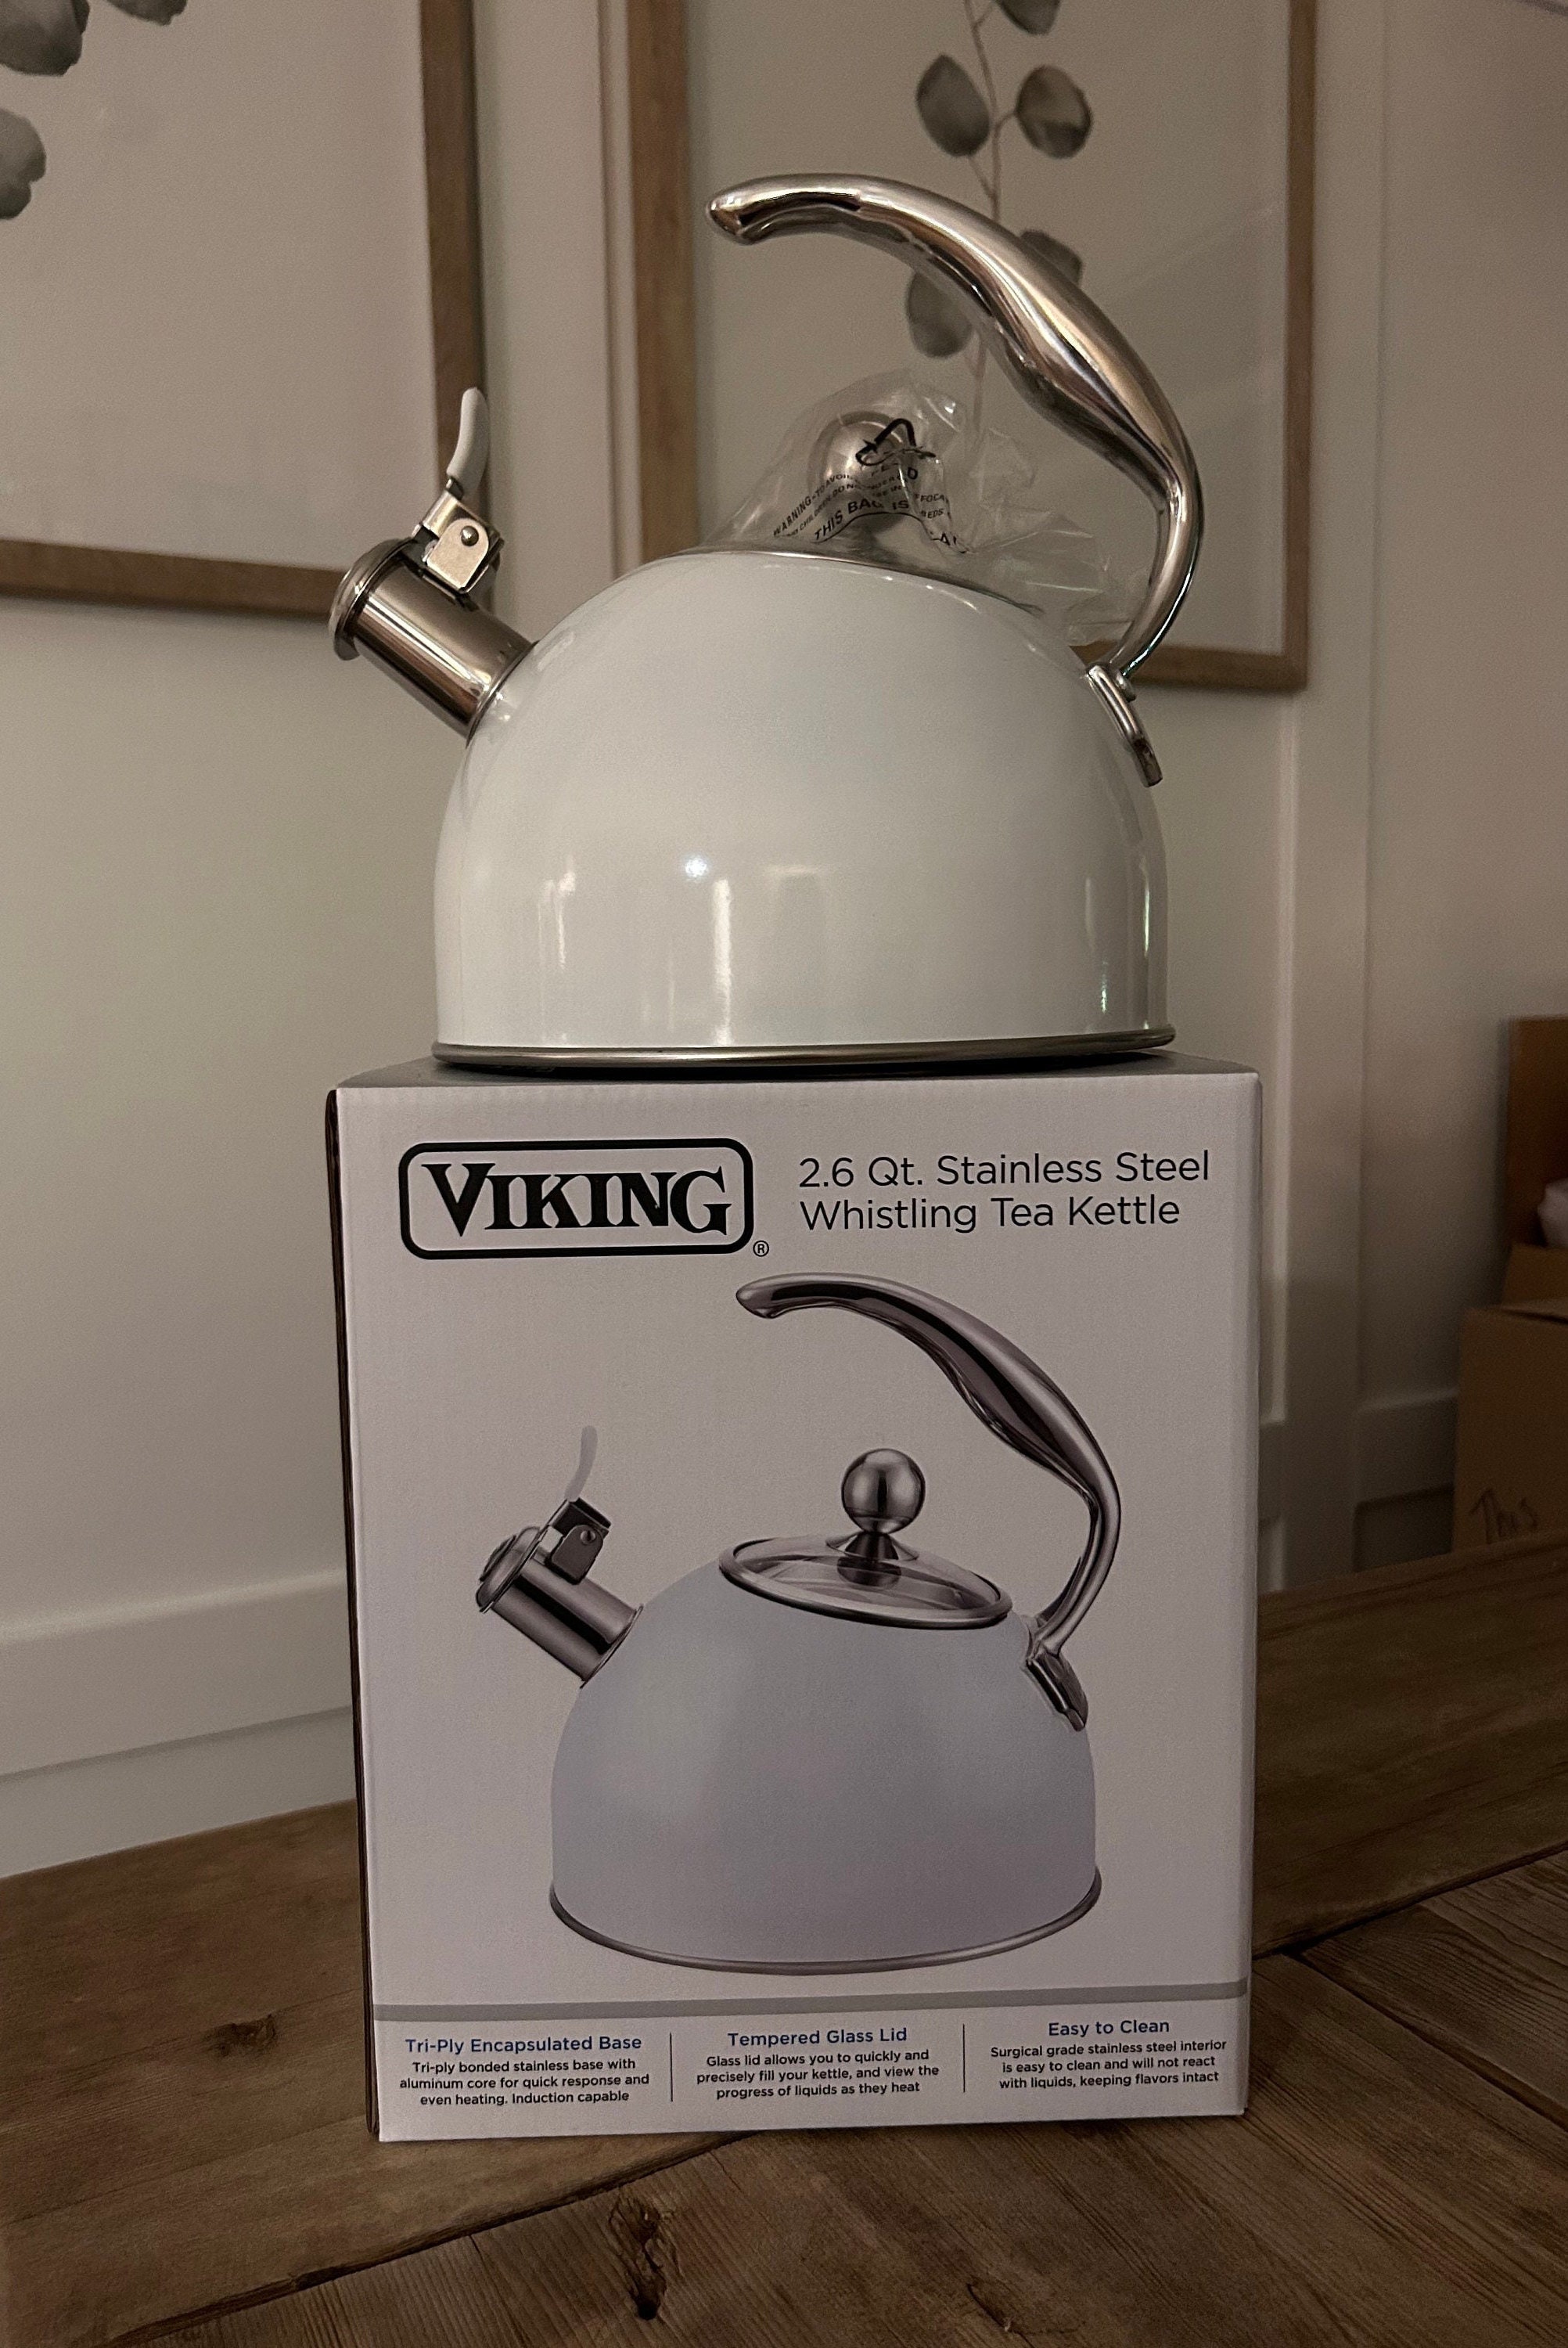 Viking 2.6-Quart Stainless Steel Tea Kettle